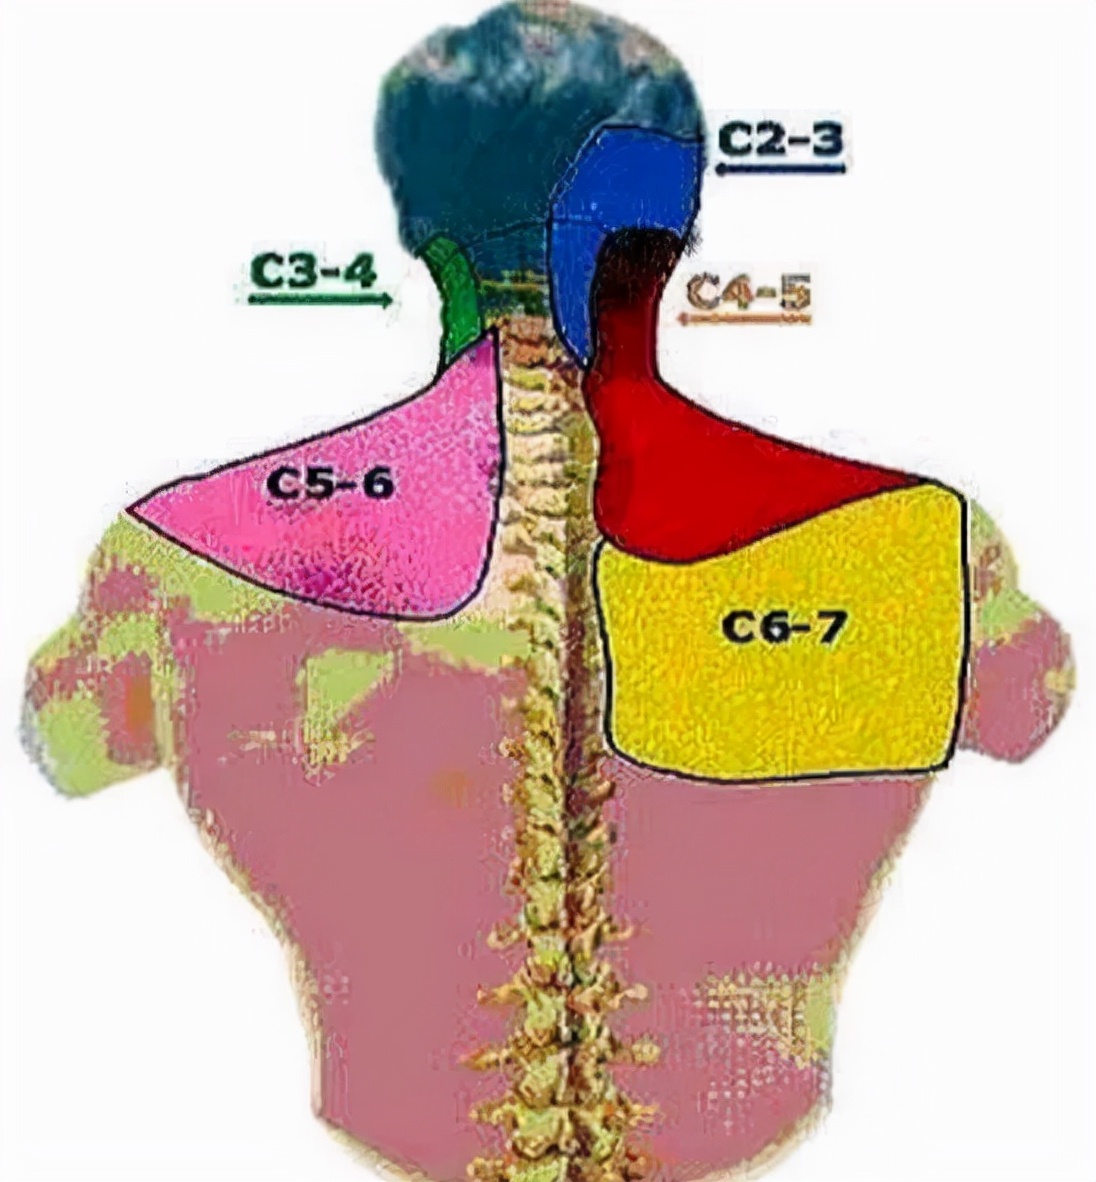 右后背不同部位疼痛图图片